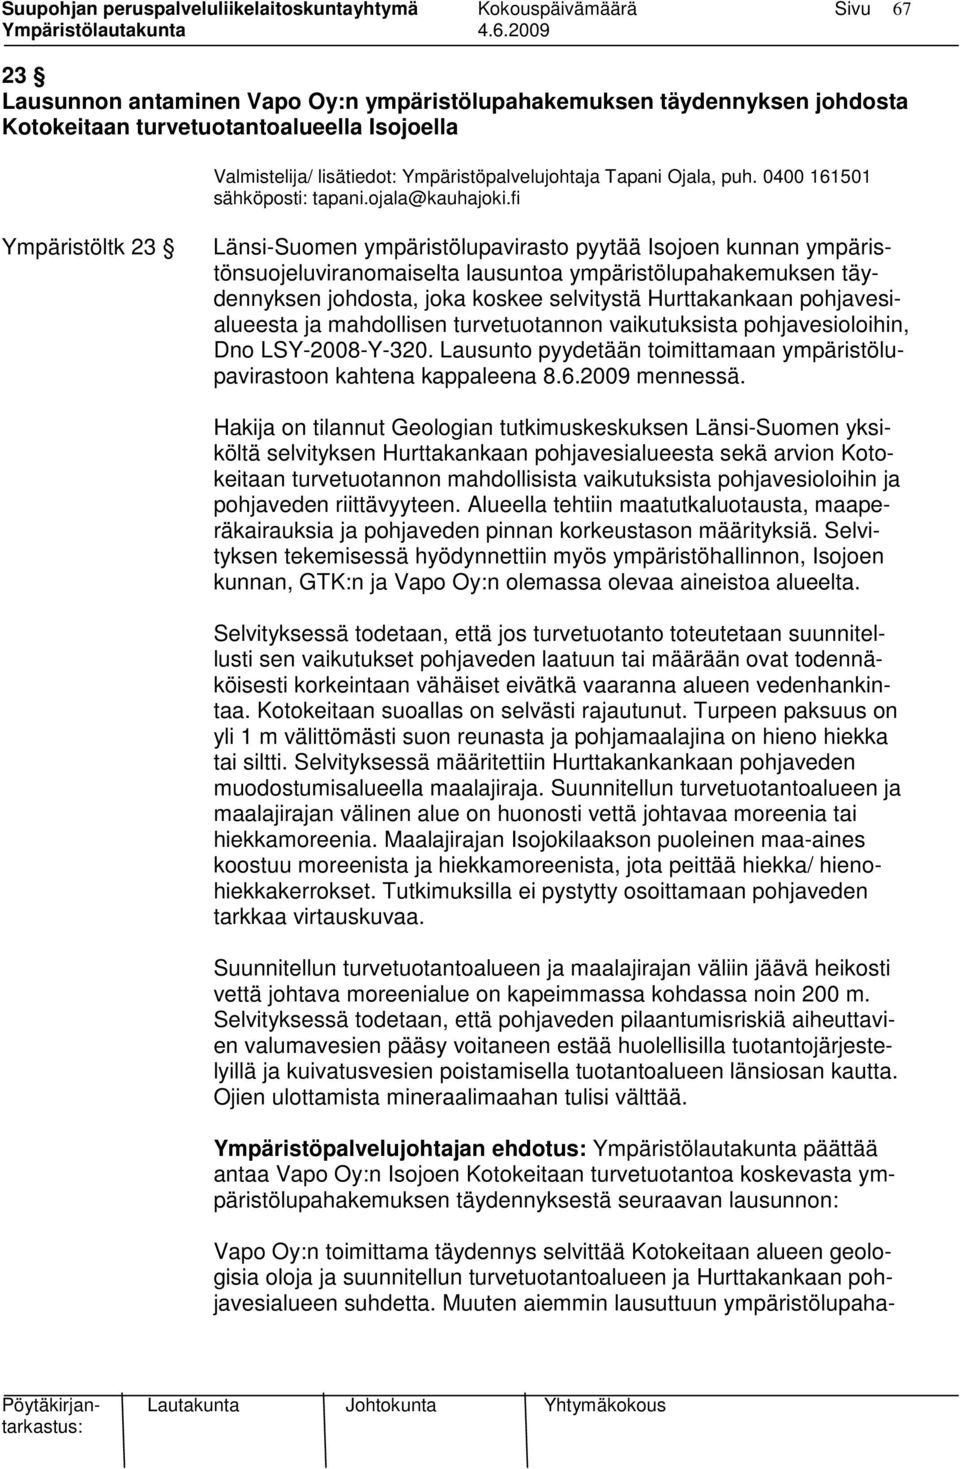 fi Ympäristöltk 23 Länsi-Suomen ympäristölupavirasto pyytää Isojoen kunnan ympäristönsuojeluviranomaiselta lausuntoa ympäristölupahakemuksen täydennyksen johdosta, joka koskee selvitystä